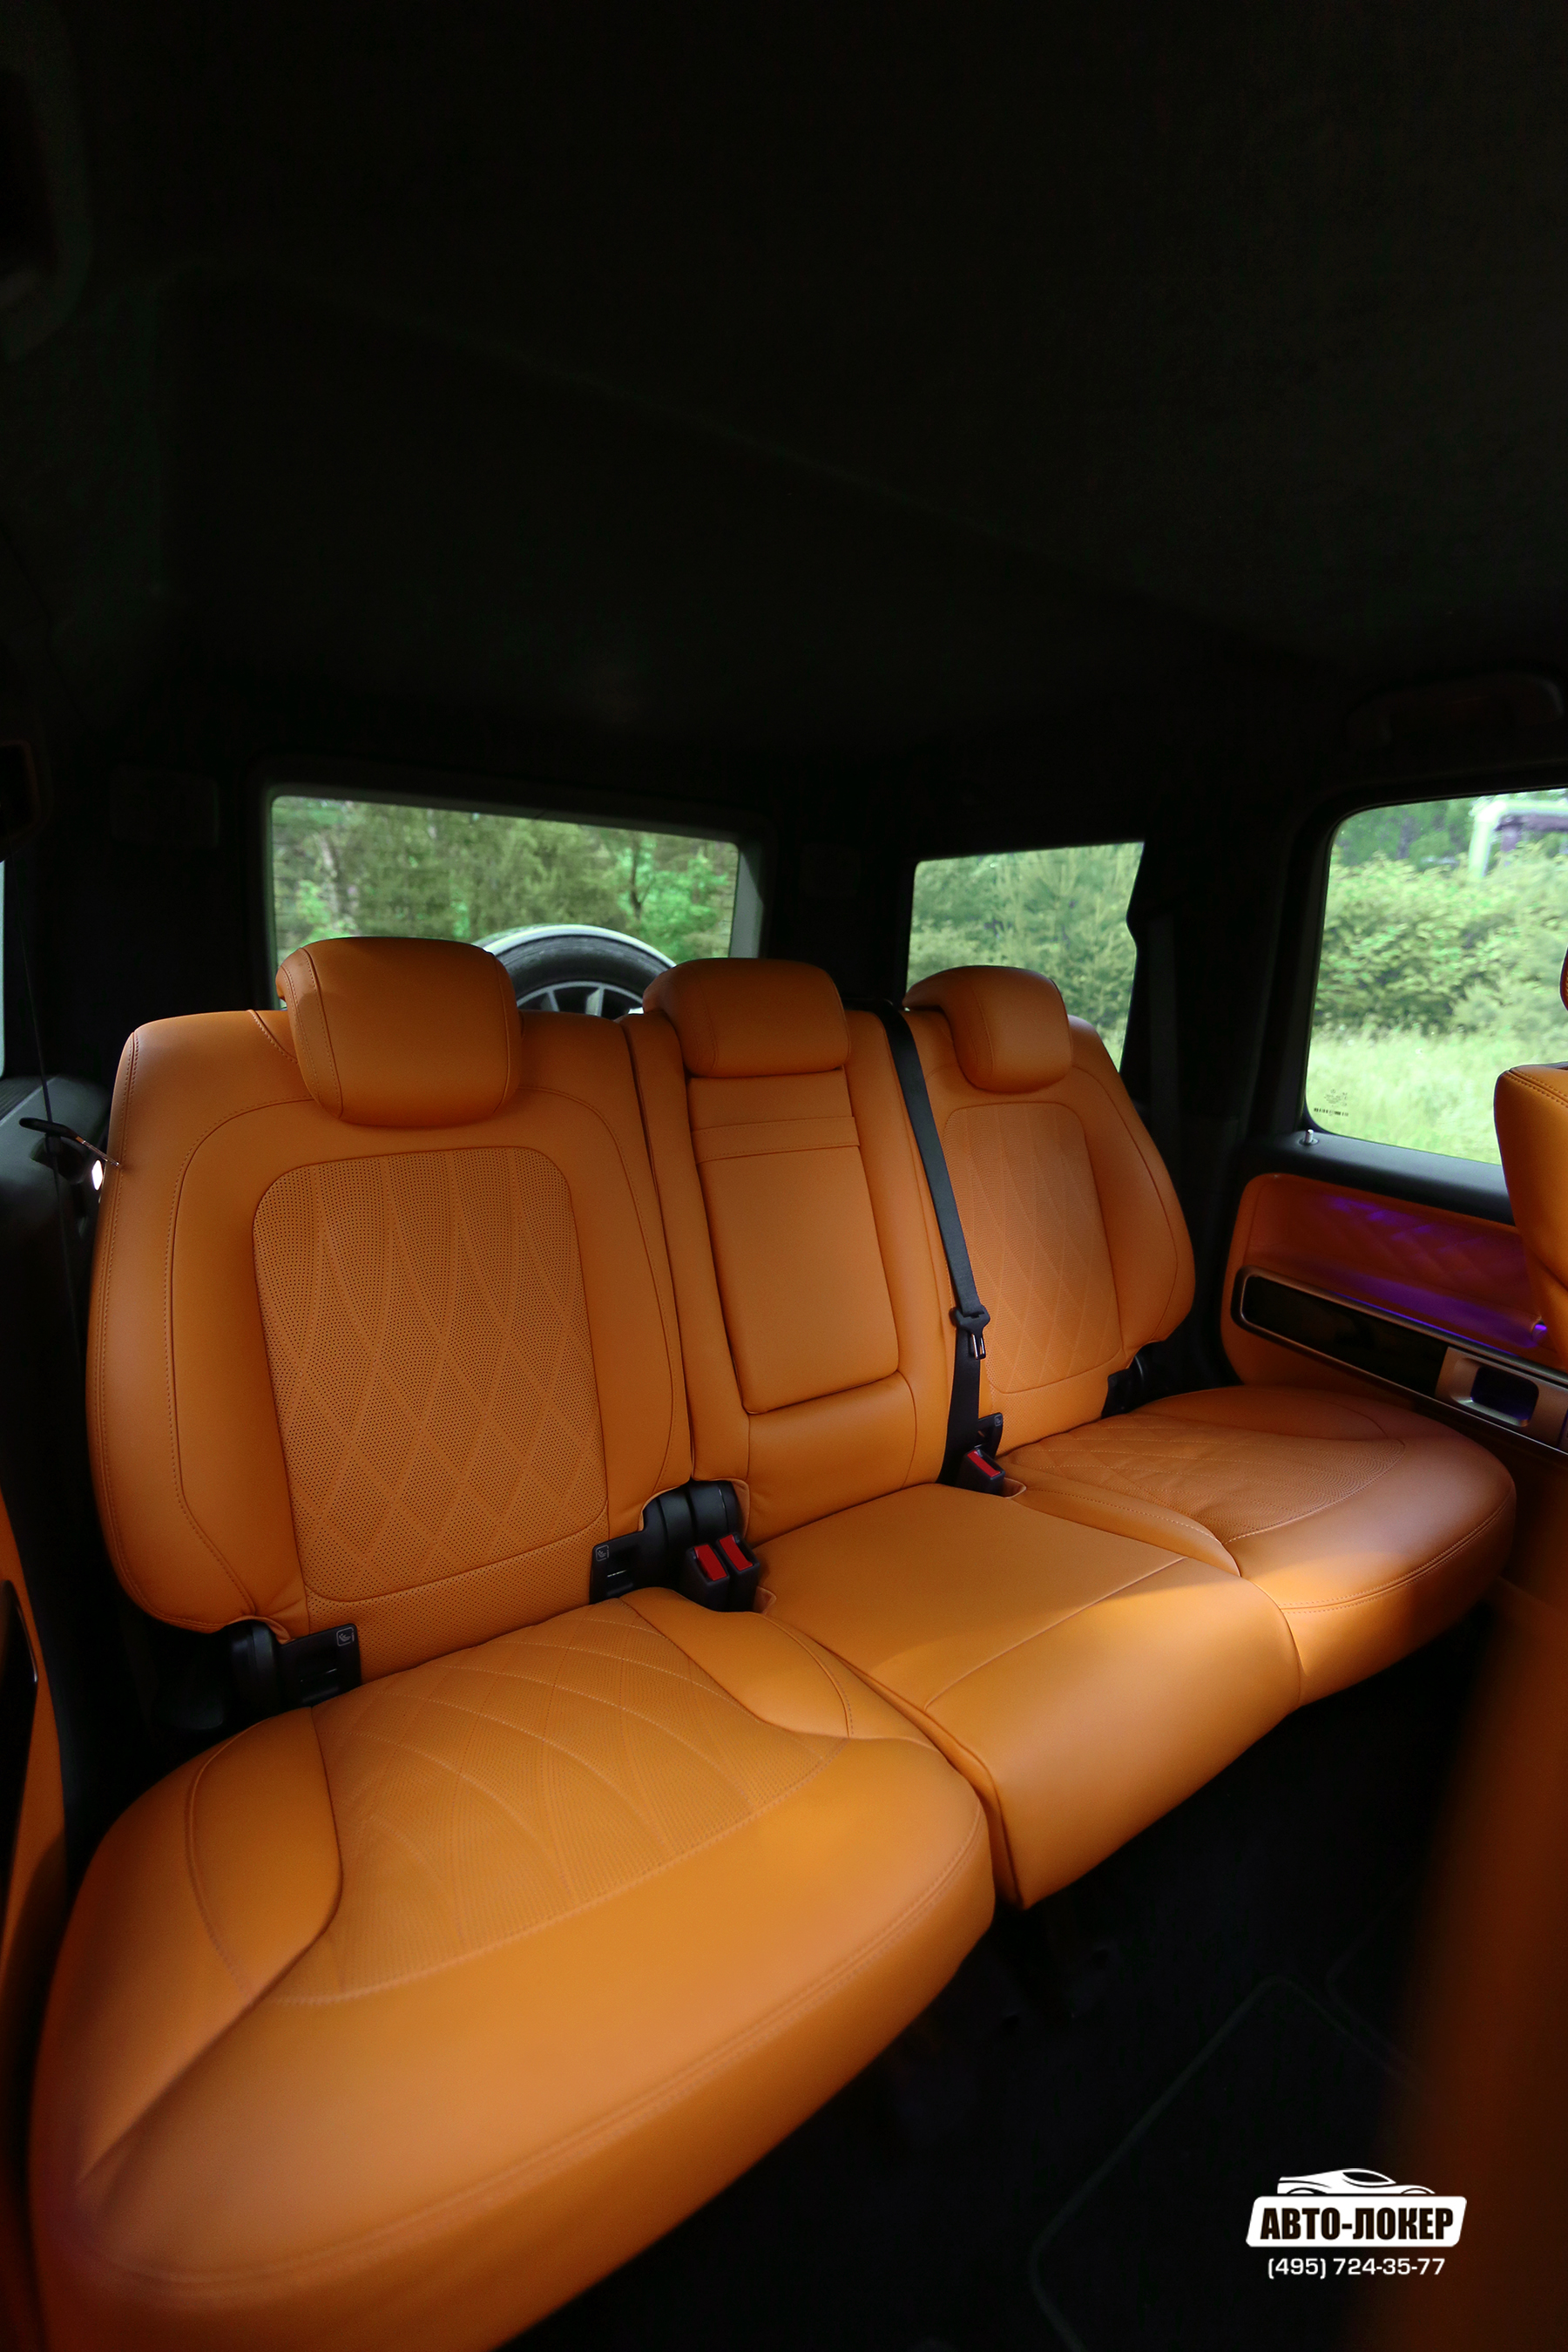 Перетяжка задних сидений натуральной кожей с использованием узорной пробойной перфорации салона Gelandewagen Mandarin